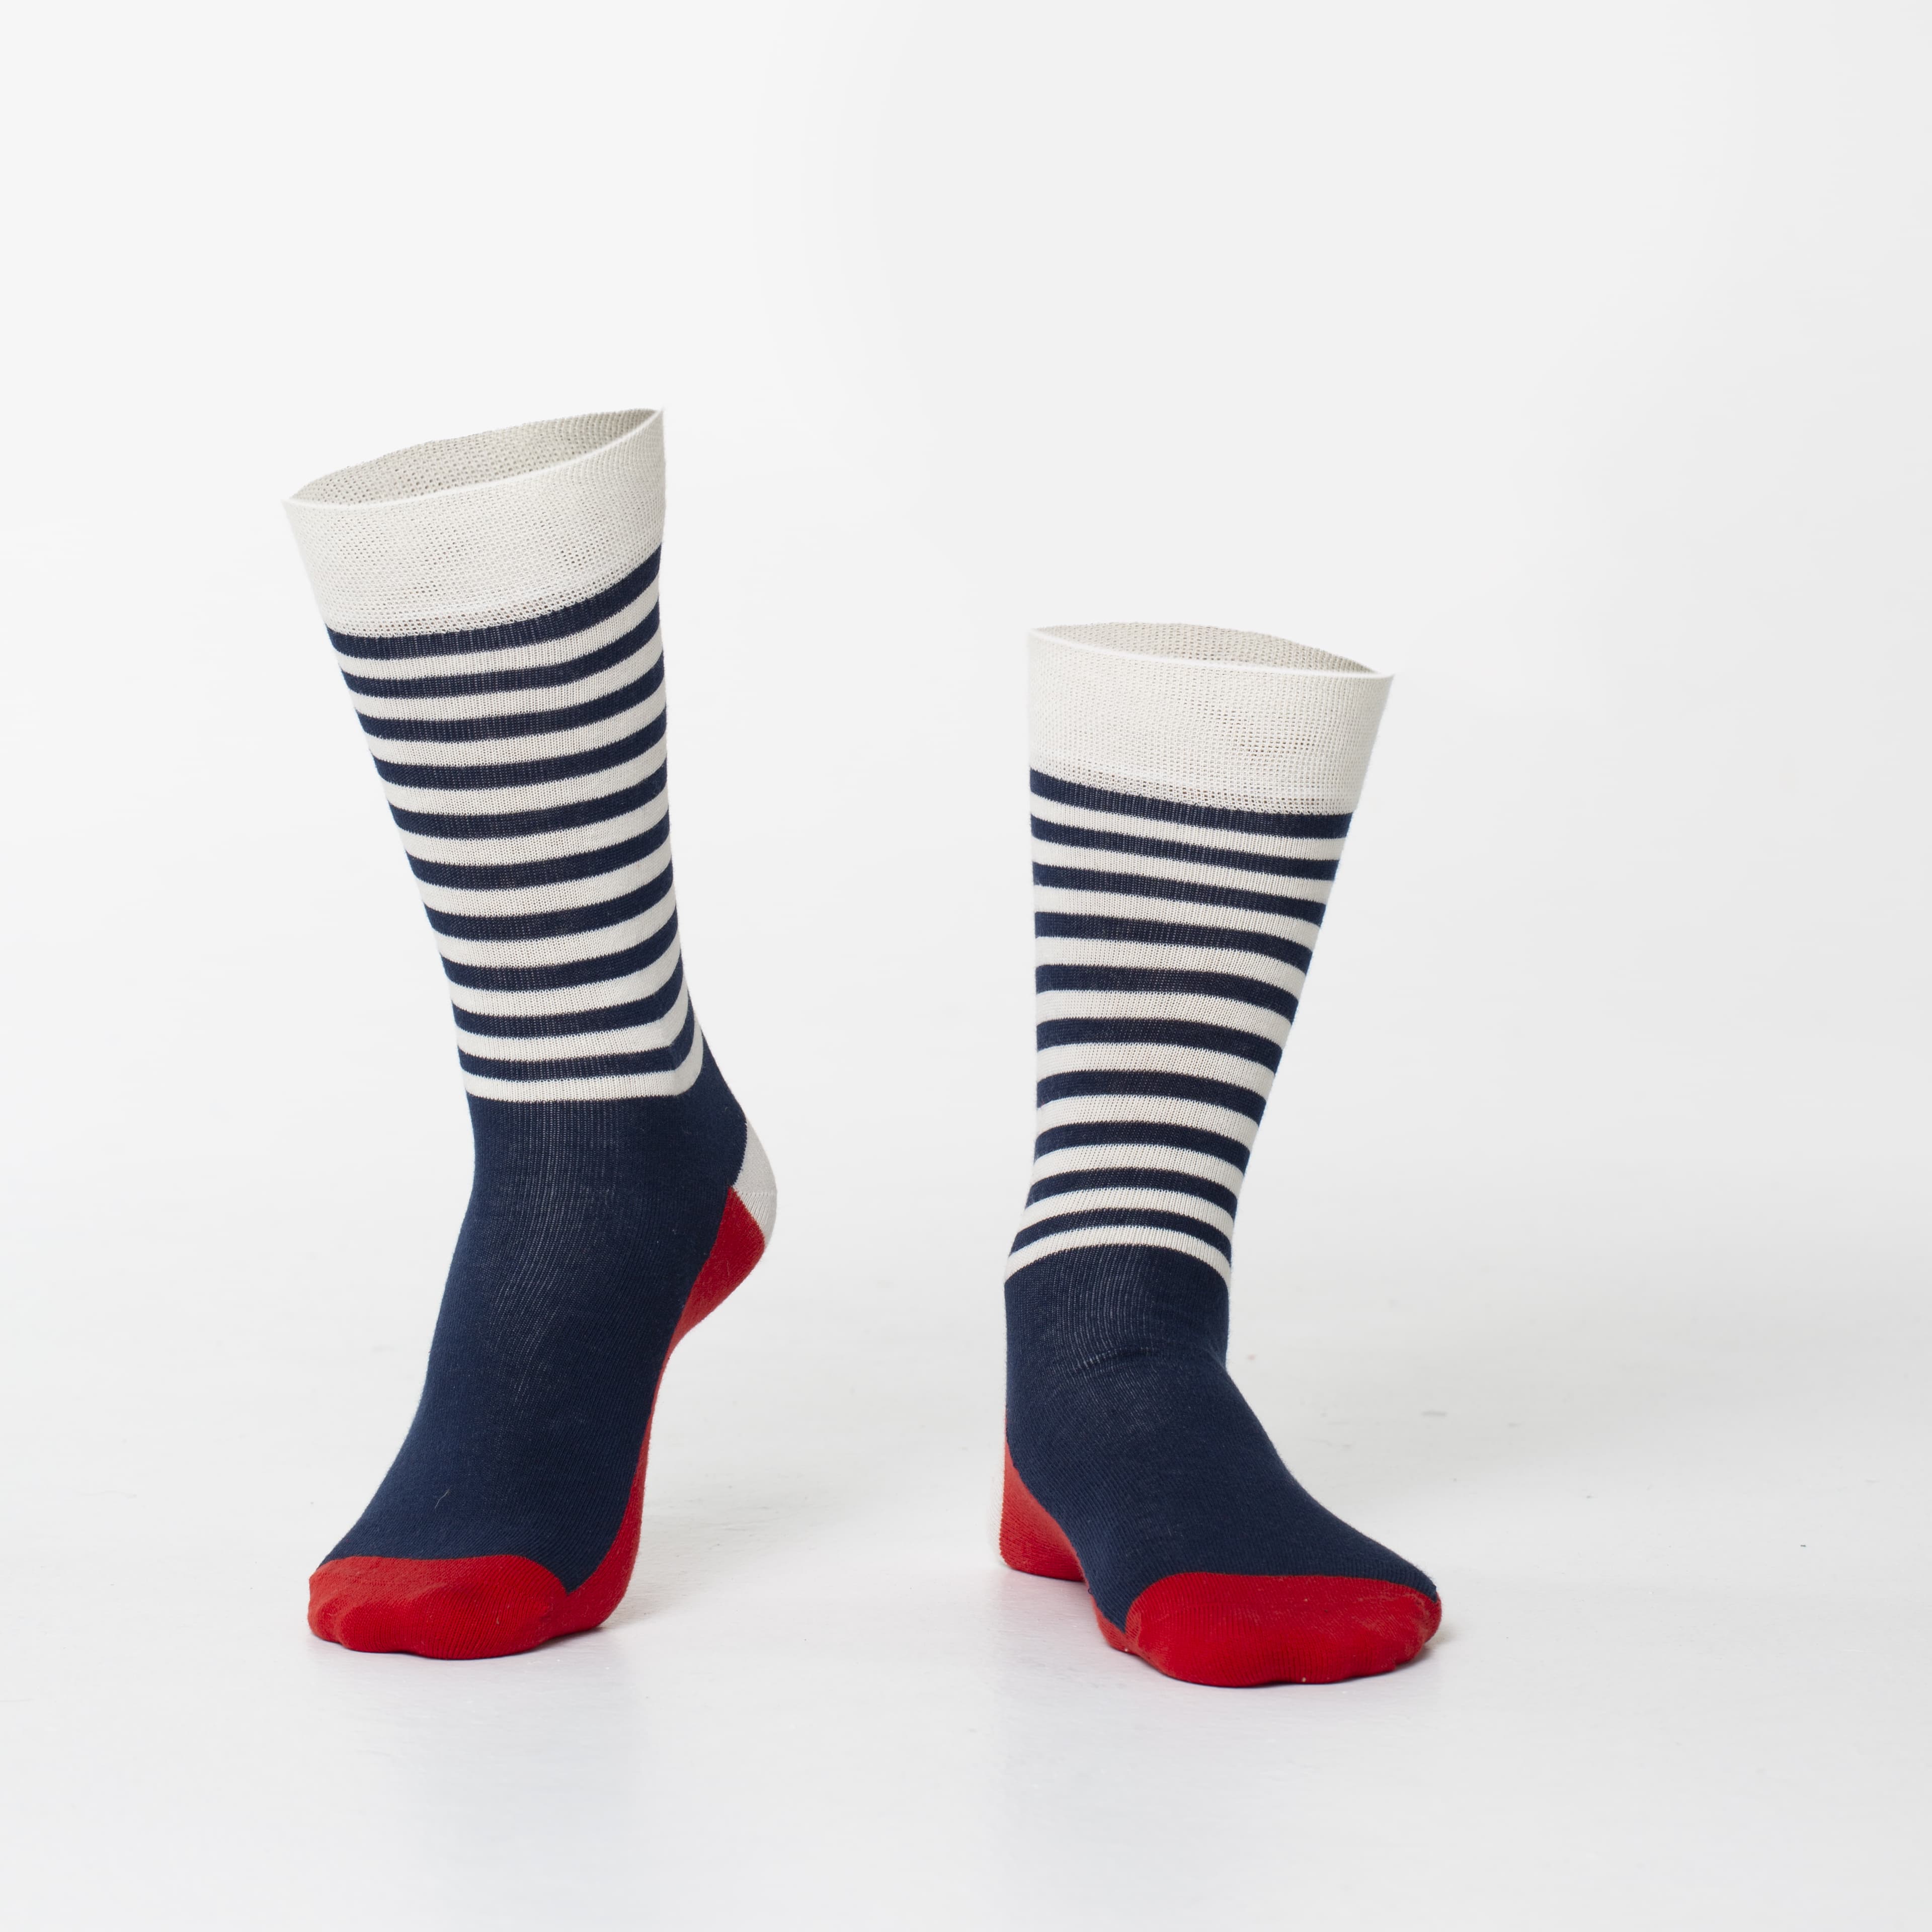 Men's dark blue striped socks